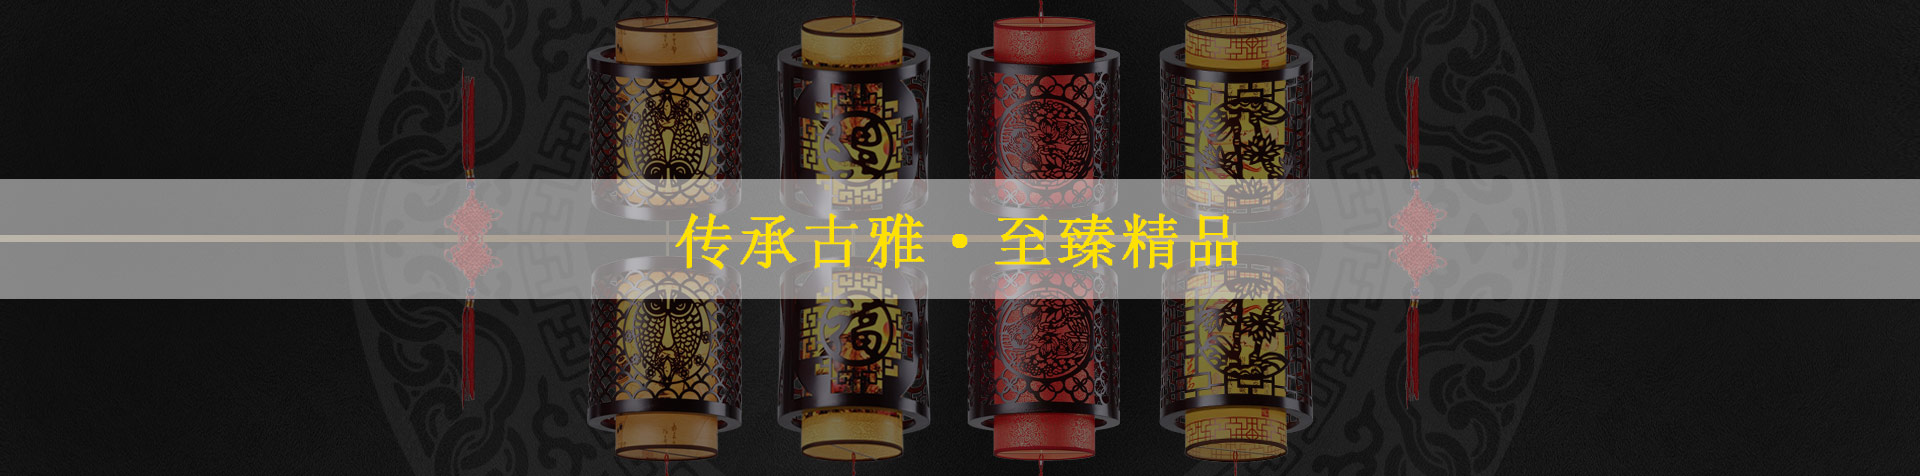 中式茶樓吸頂燈令人漸入一種曼妙之境 